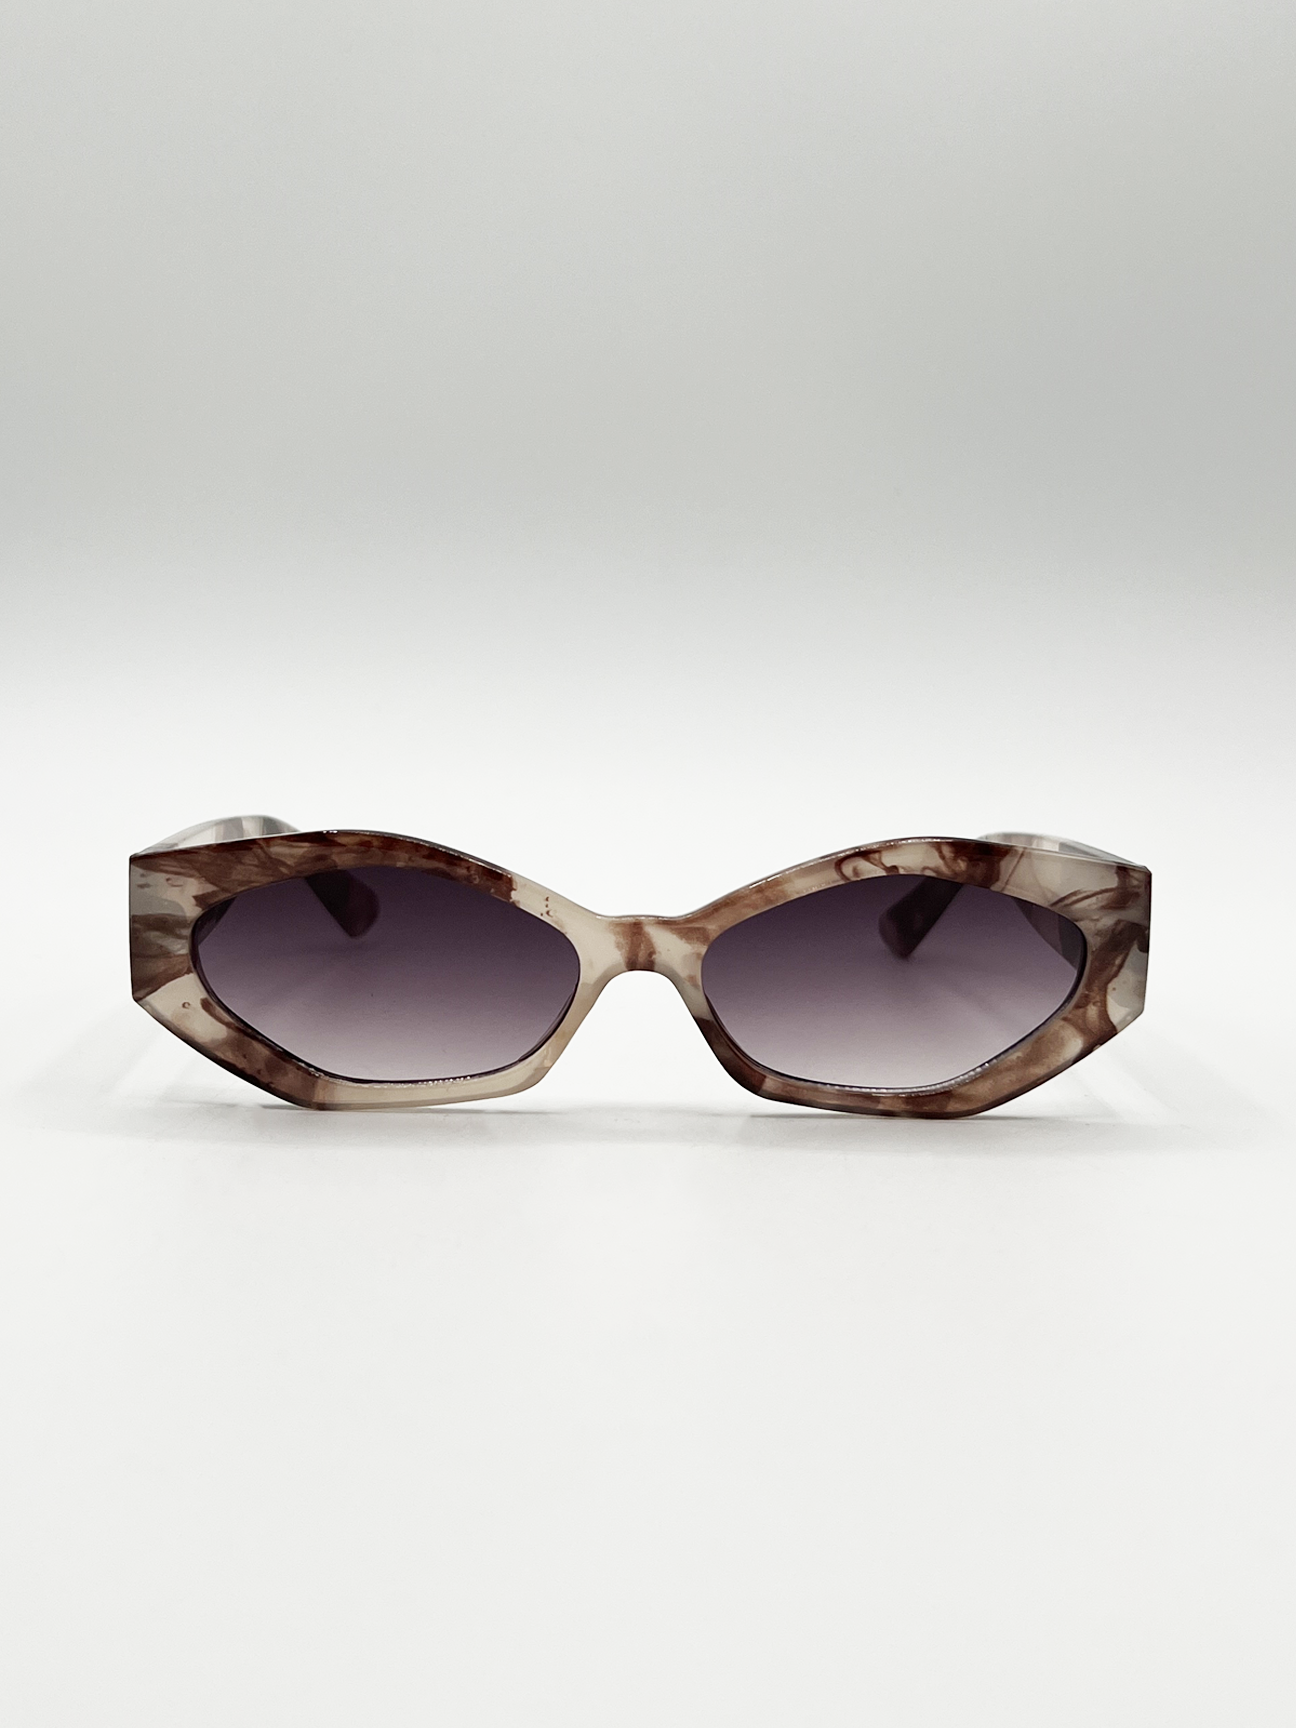 Smoke Effect Angular Sunglasses in Brown